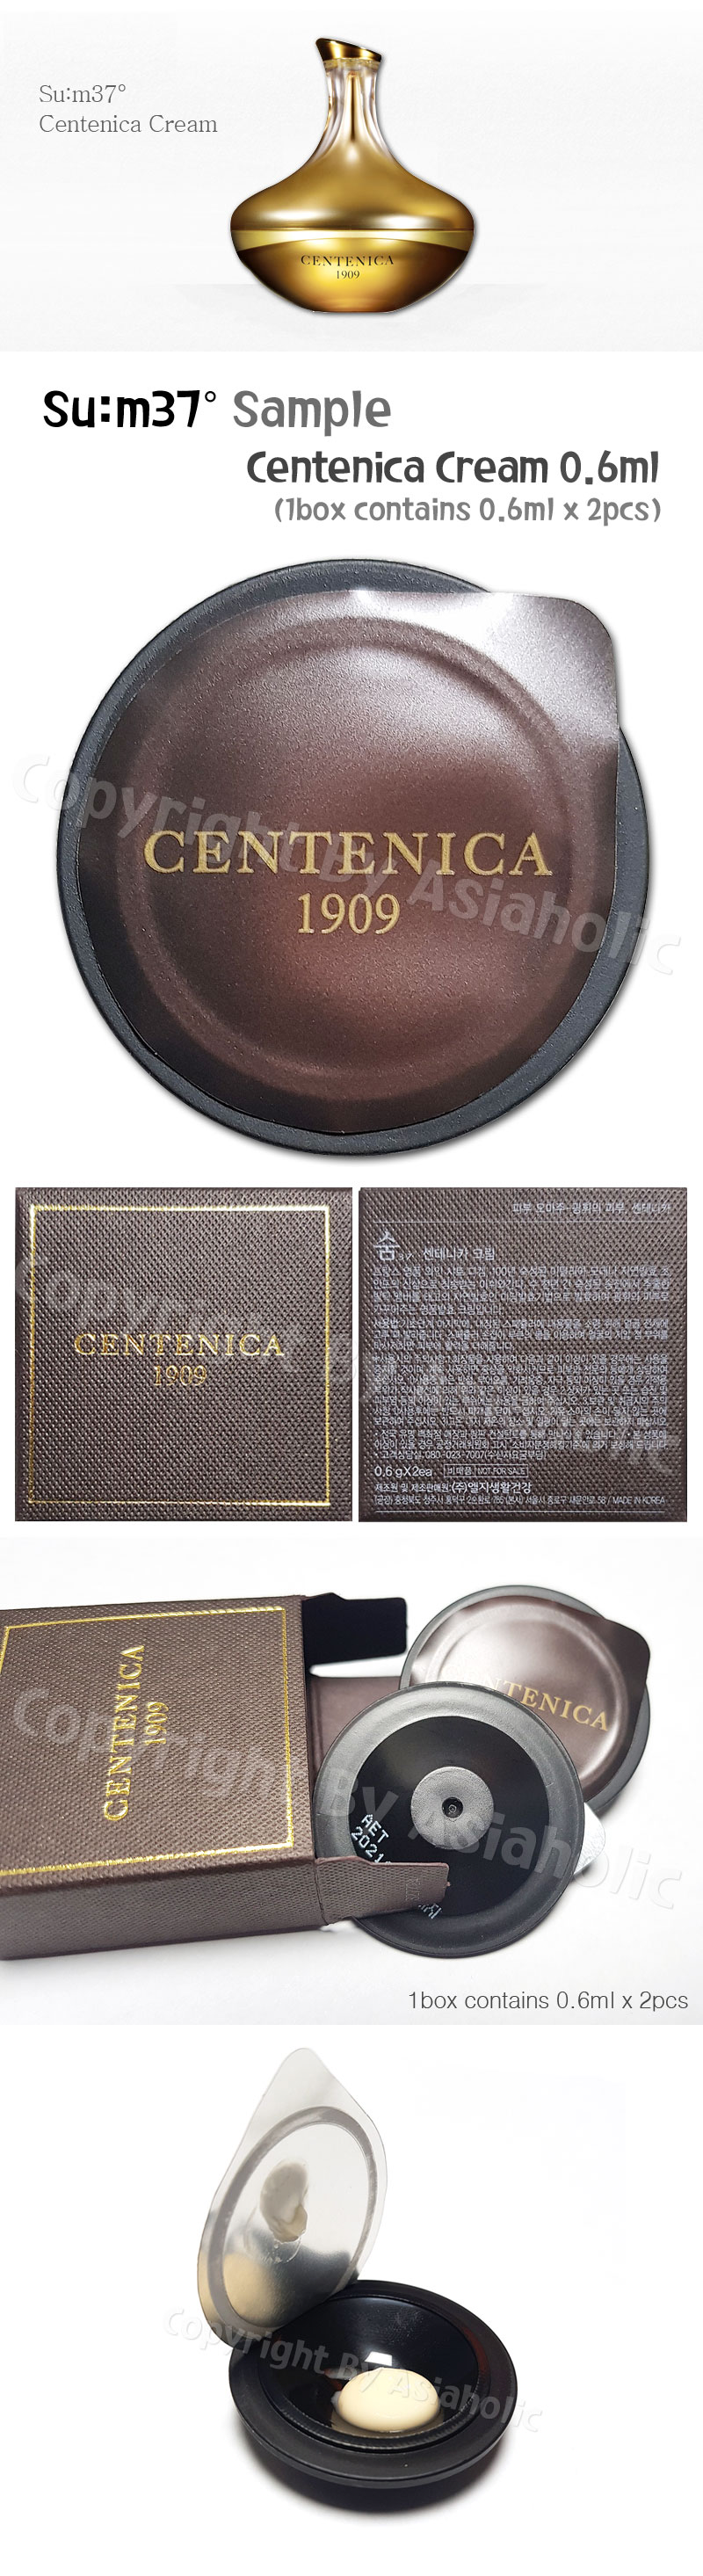 SU:M37 Centenica Cream 0.6ml (2pcs ~ 20pcs) Premium Sample Sum37 Newest Version